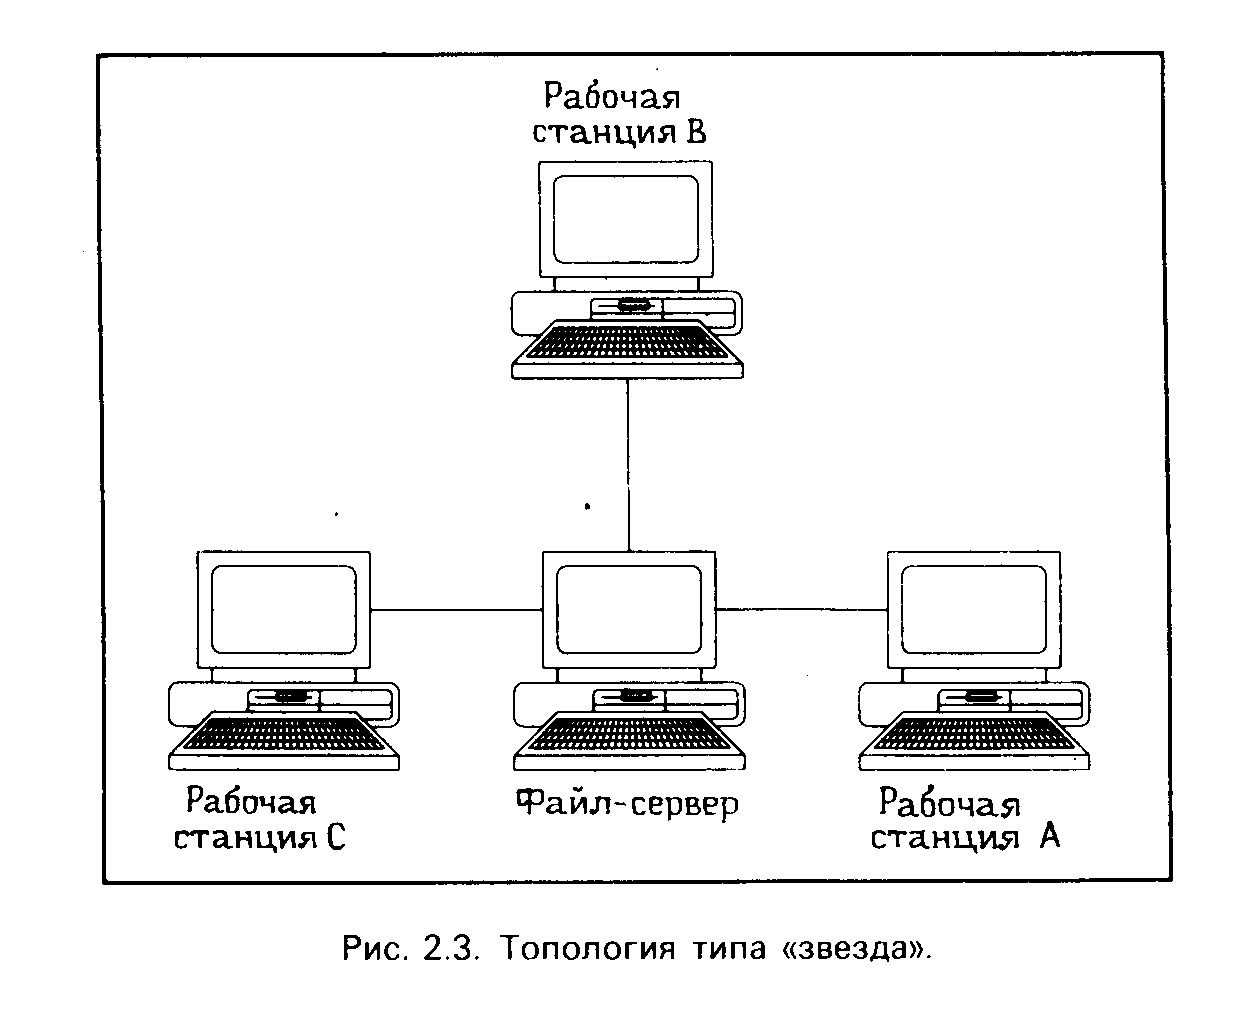 Claw.ru | Рефераты по информатике, программированию | Система NetWare фирмы Novell